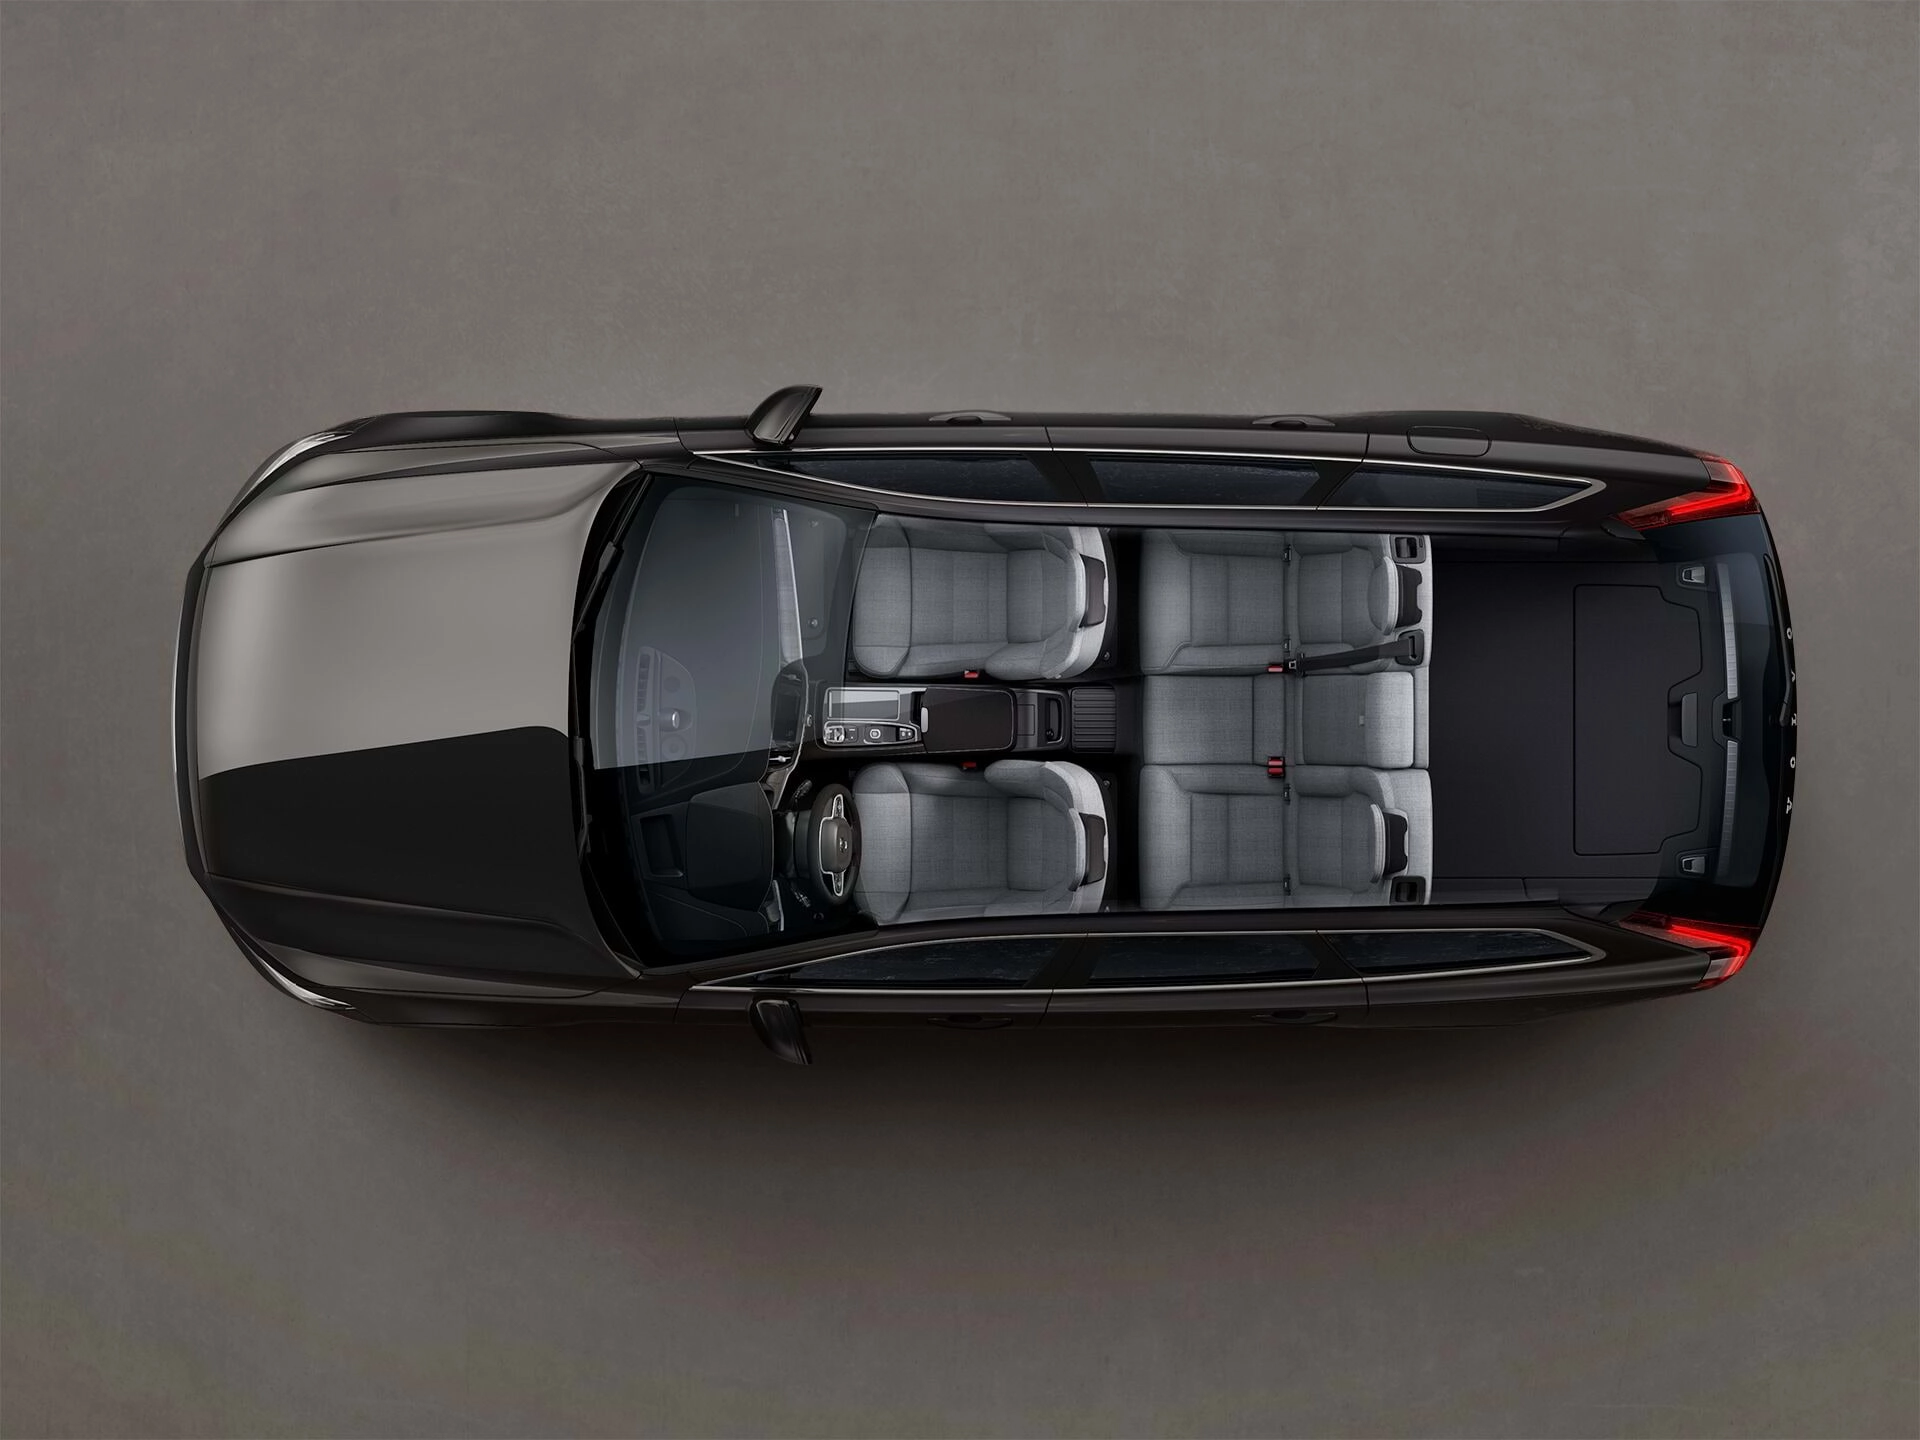 Perspetiva panorâmica do espaçoso interior de cinco lugares de uma carrinha Volvo.